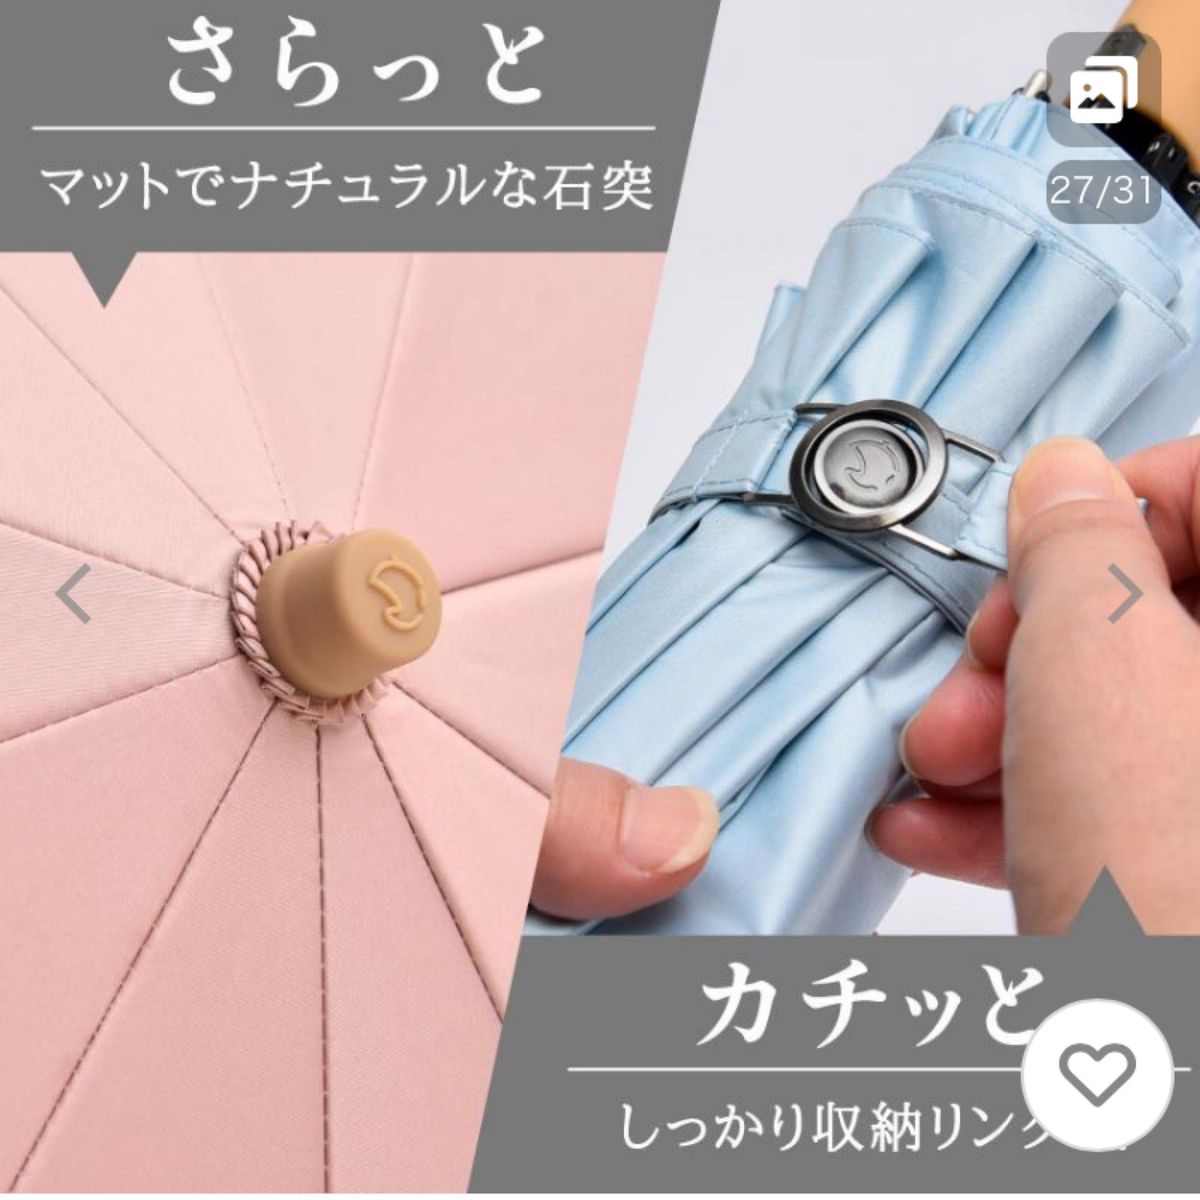 【新品】solshade ソルシェード　日傘　折りたたみ傘　杢セピア　完全遮光